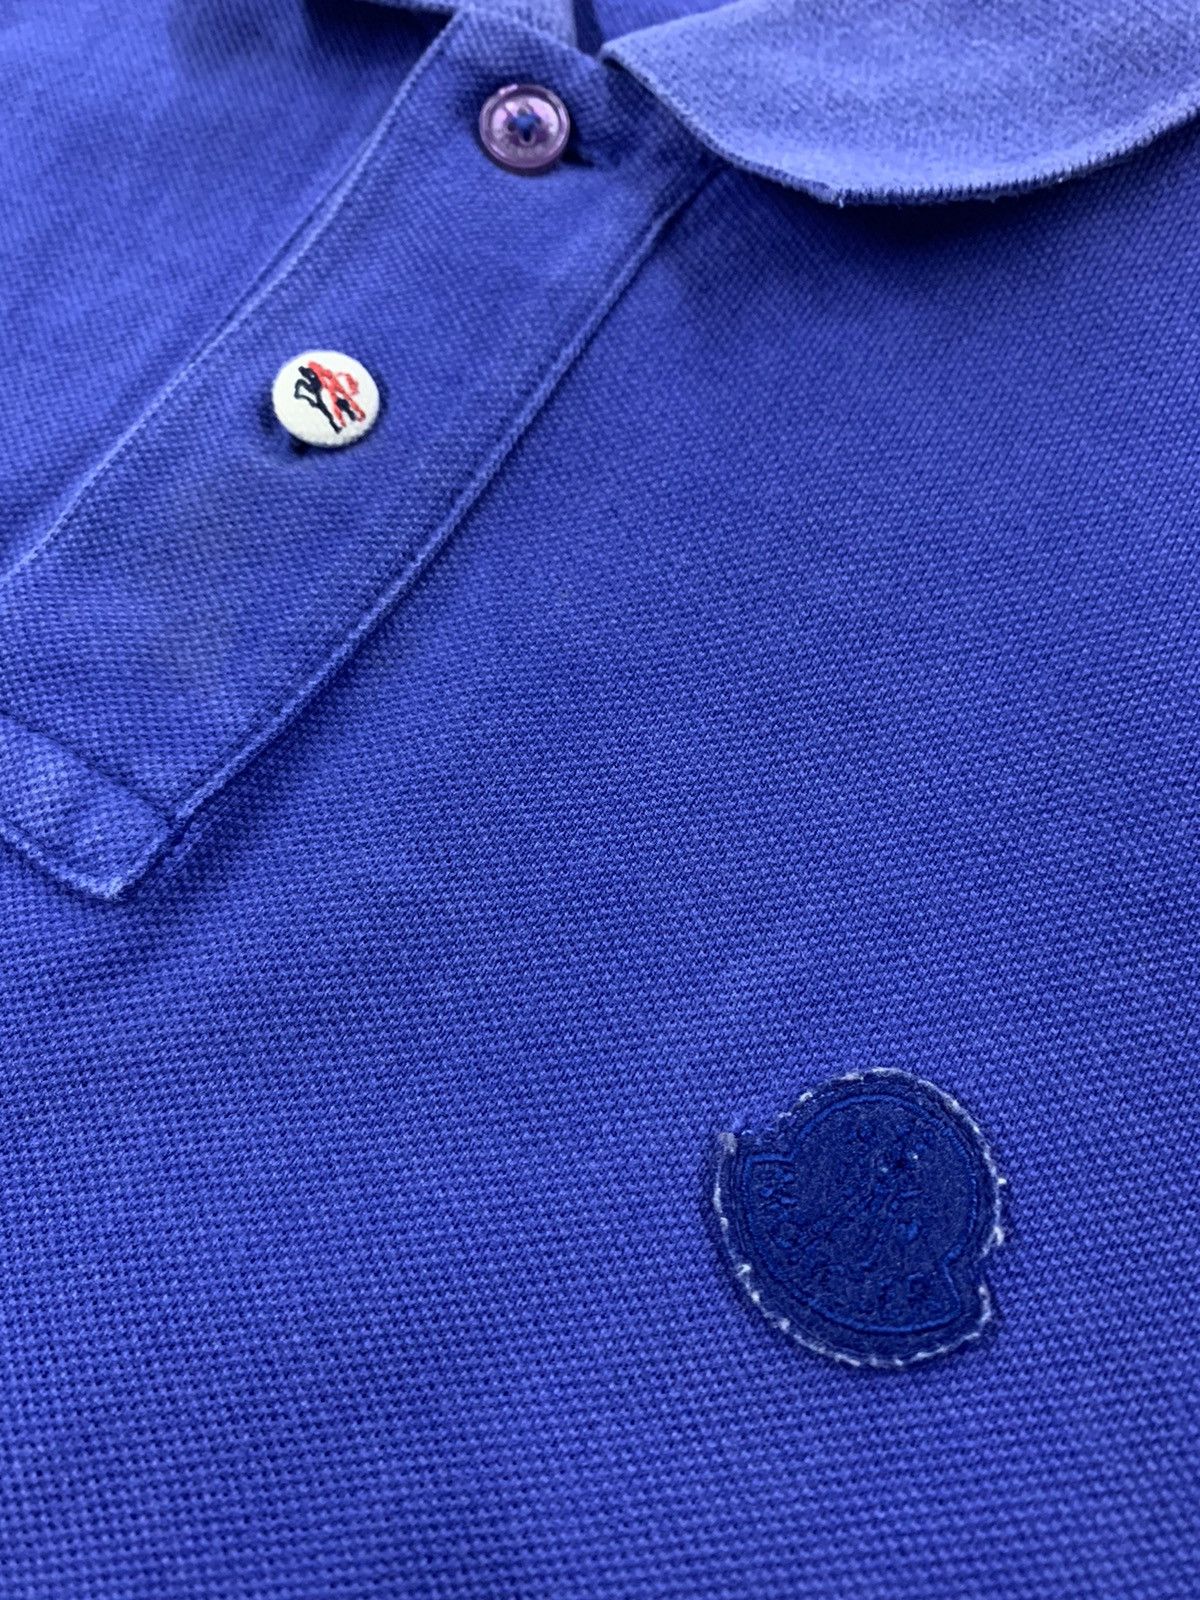 Moncler Moncler Polo Shirt | Grailed